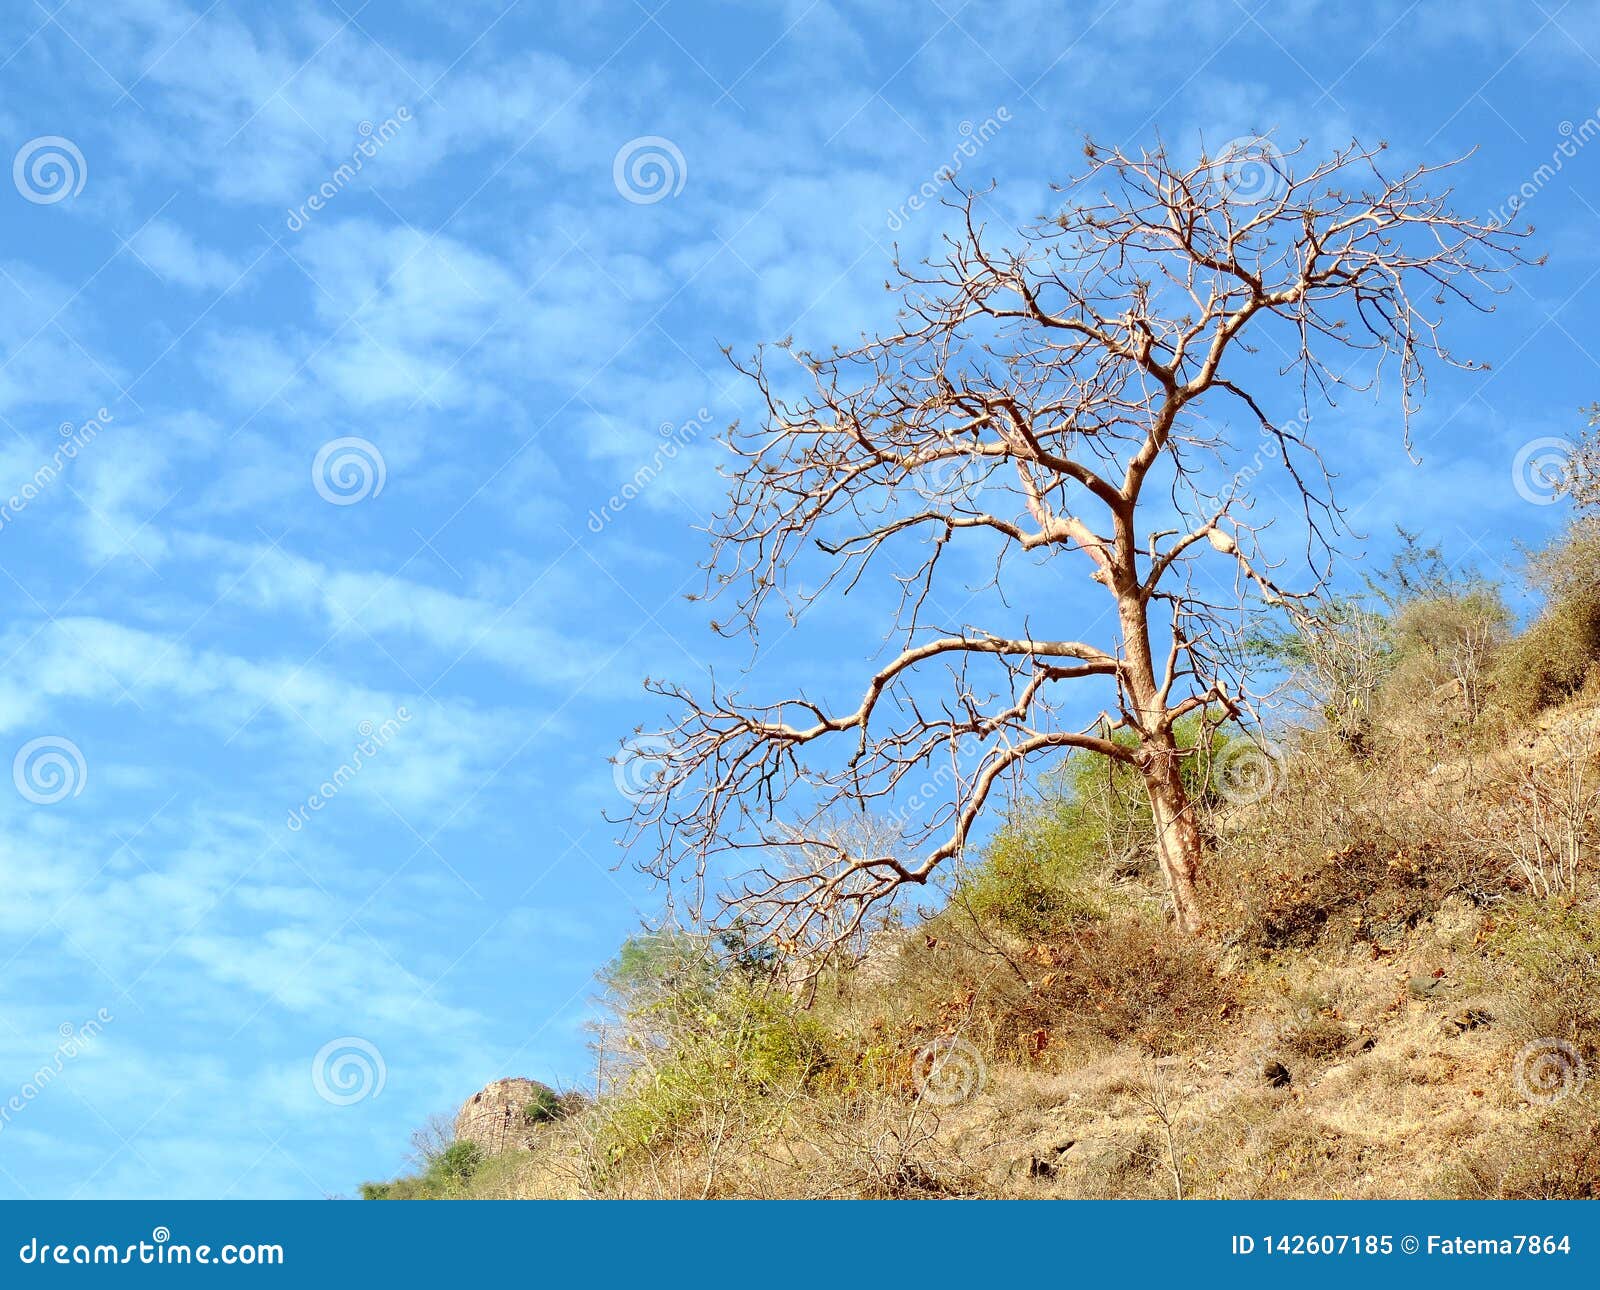 dry tree on the hill of ratangarh kheri in madhya pradesh, india